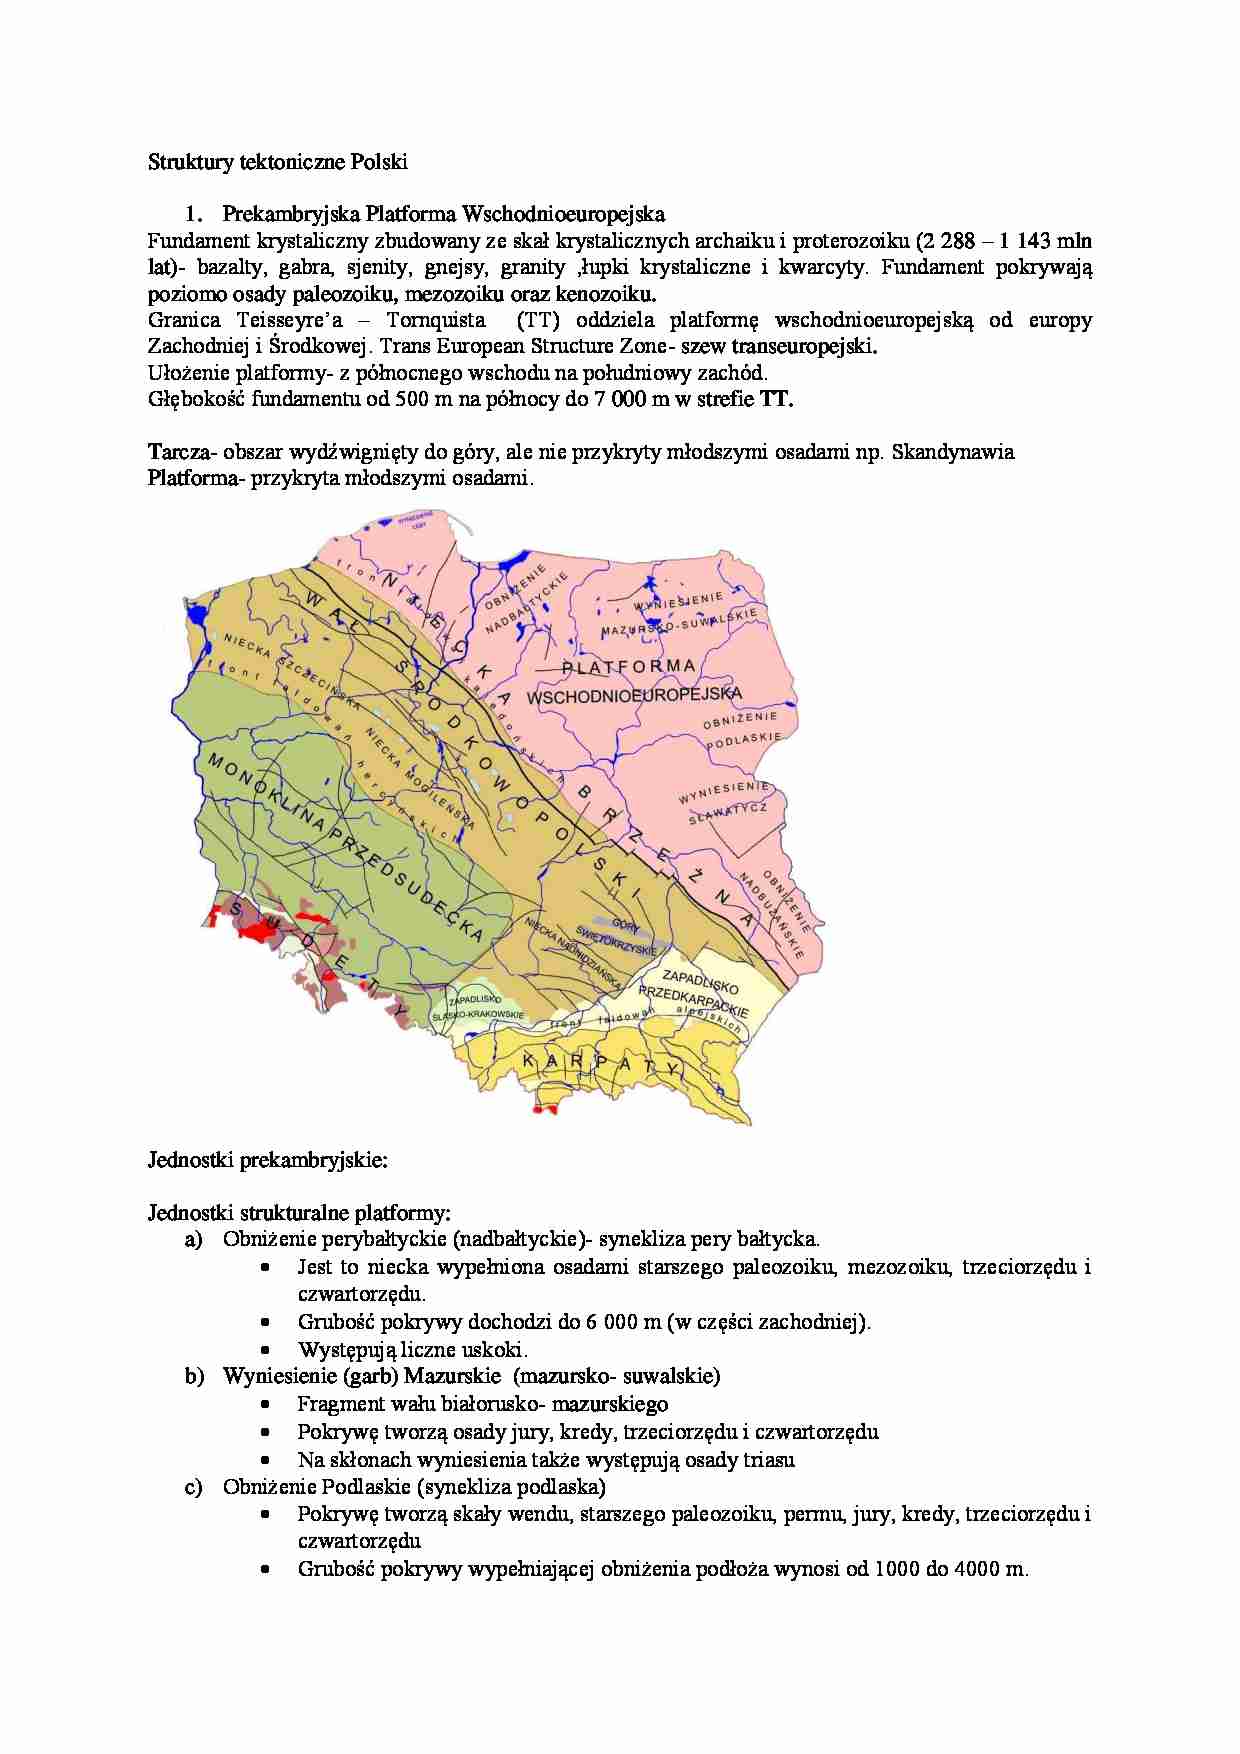 Struktury tektoniczne Polski - strona 1